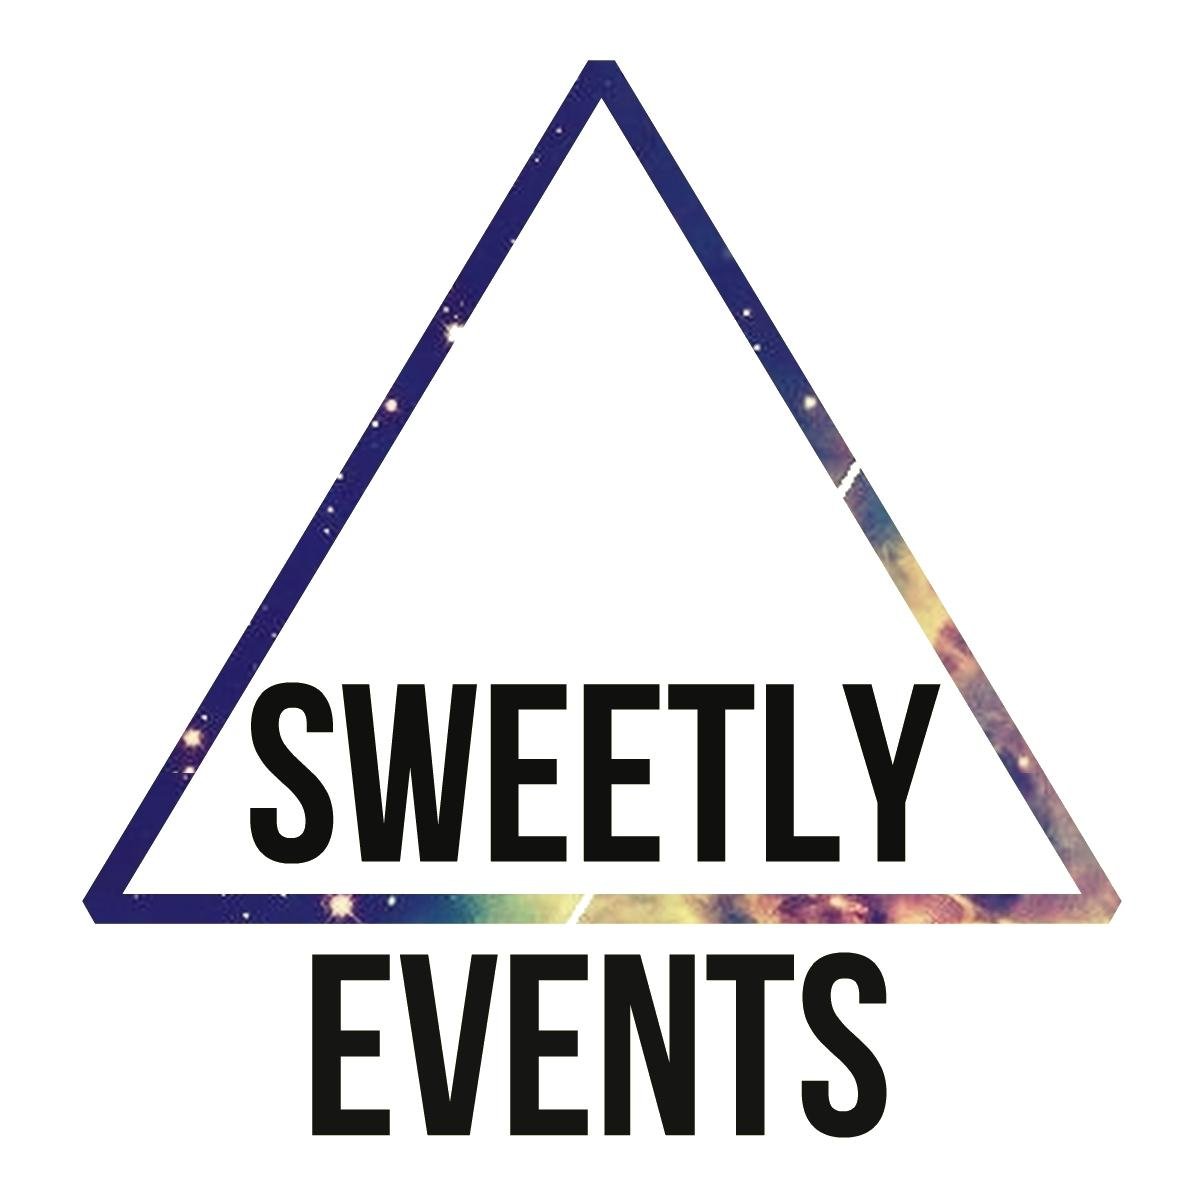 Sweetly Events est une association organisant des conventions sur vos séries préférées! #FakingIt #Skins